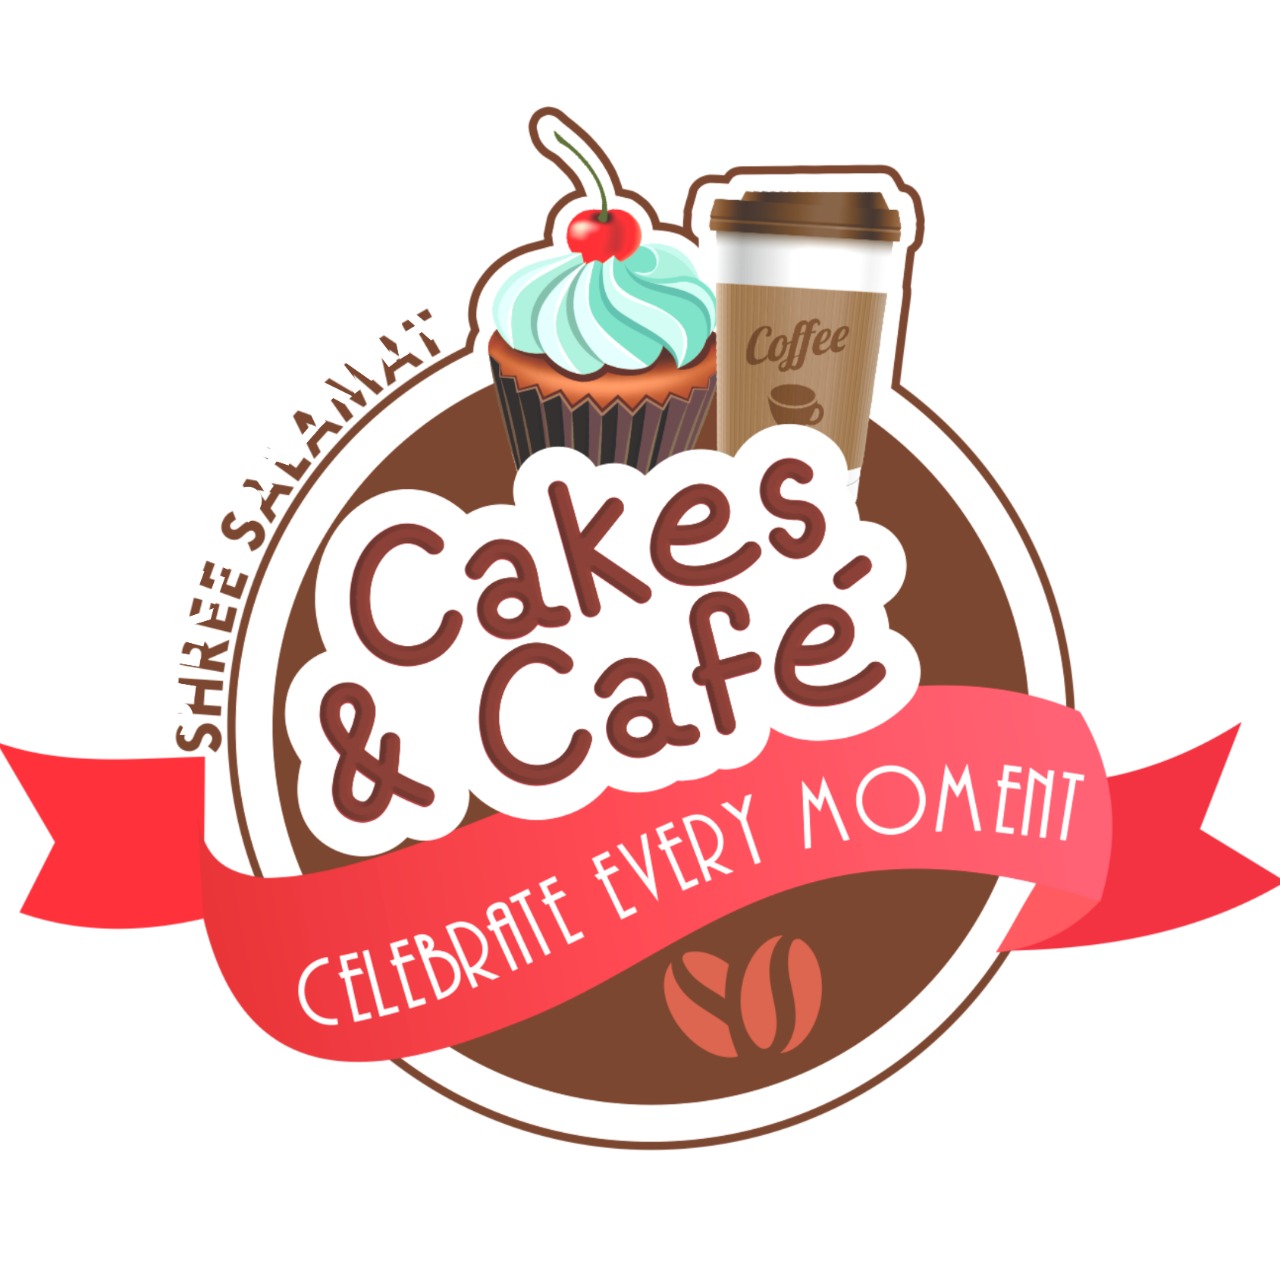 CAKE & CAFE